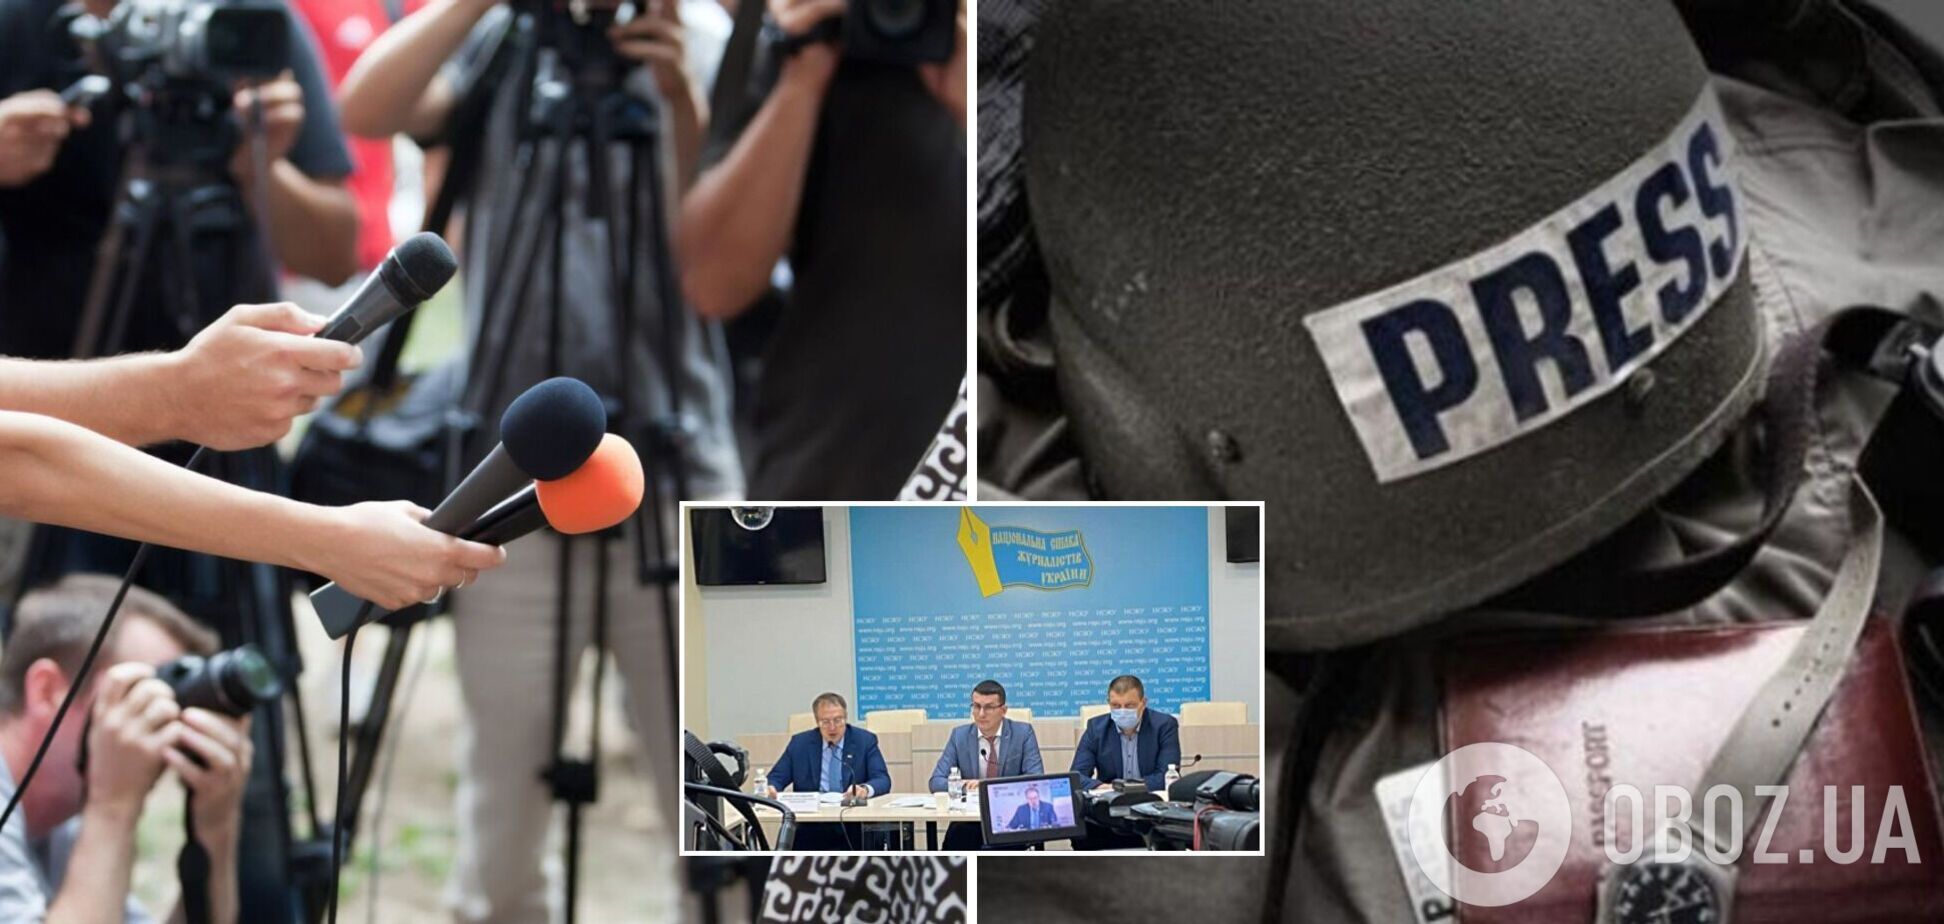 Профессия журналиста в Украине должна стать безопасной, отмечают в НСЖУ.